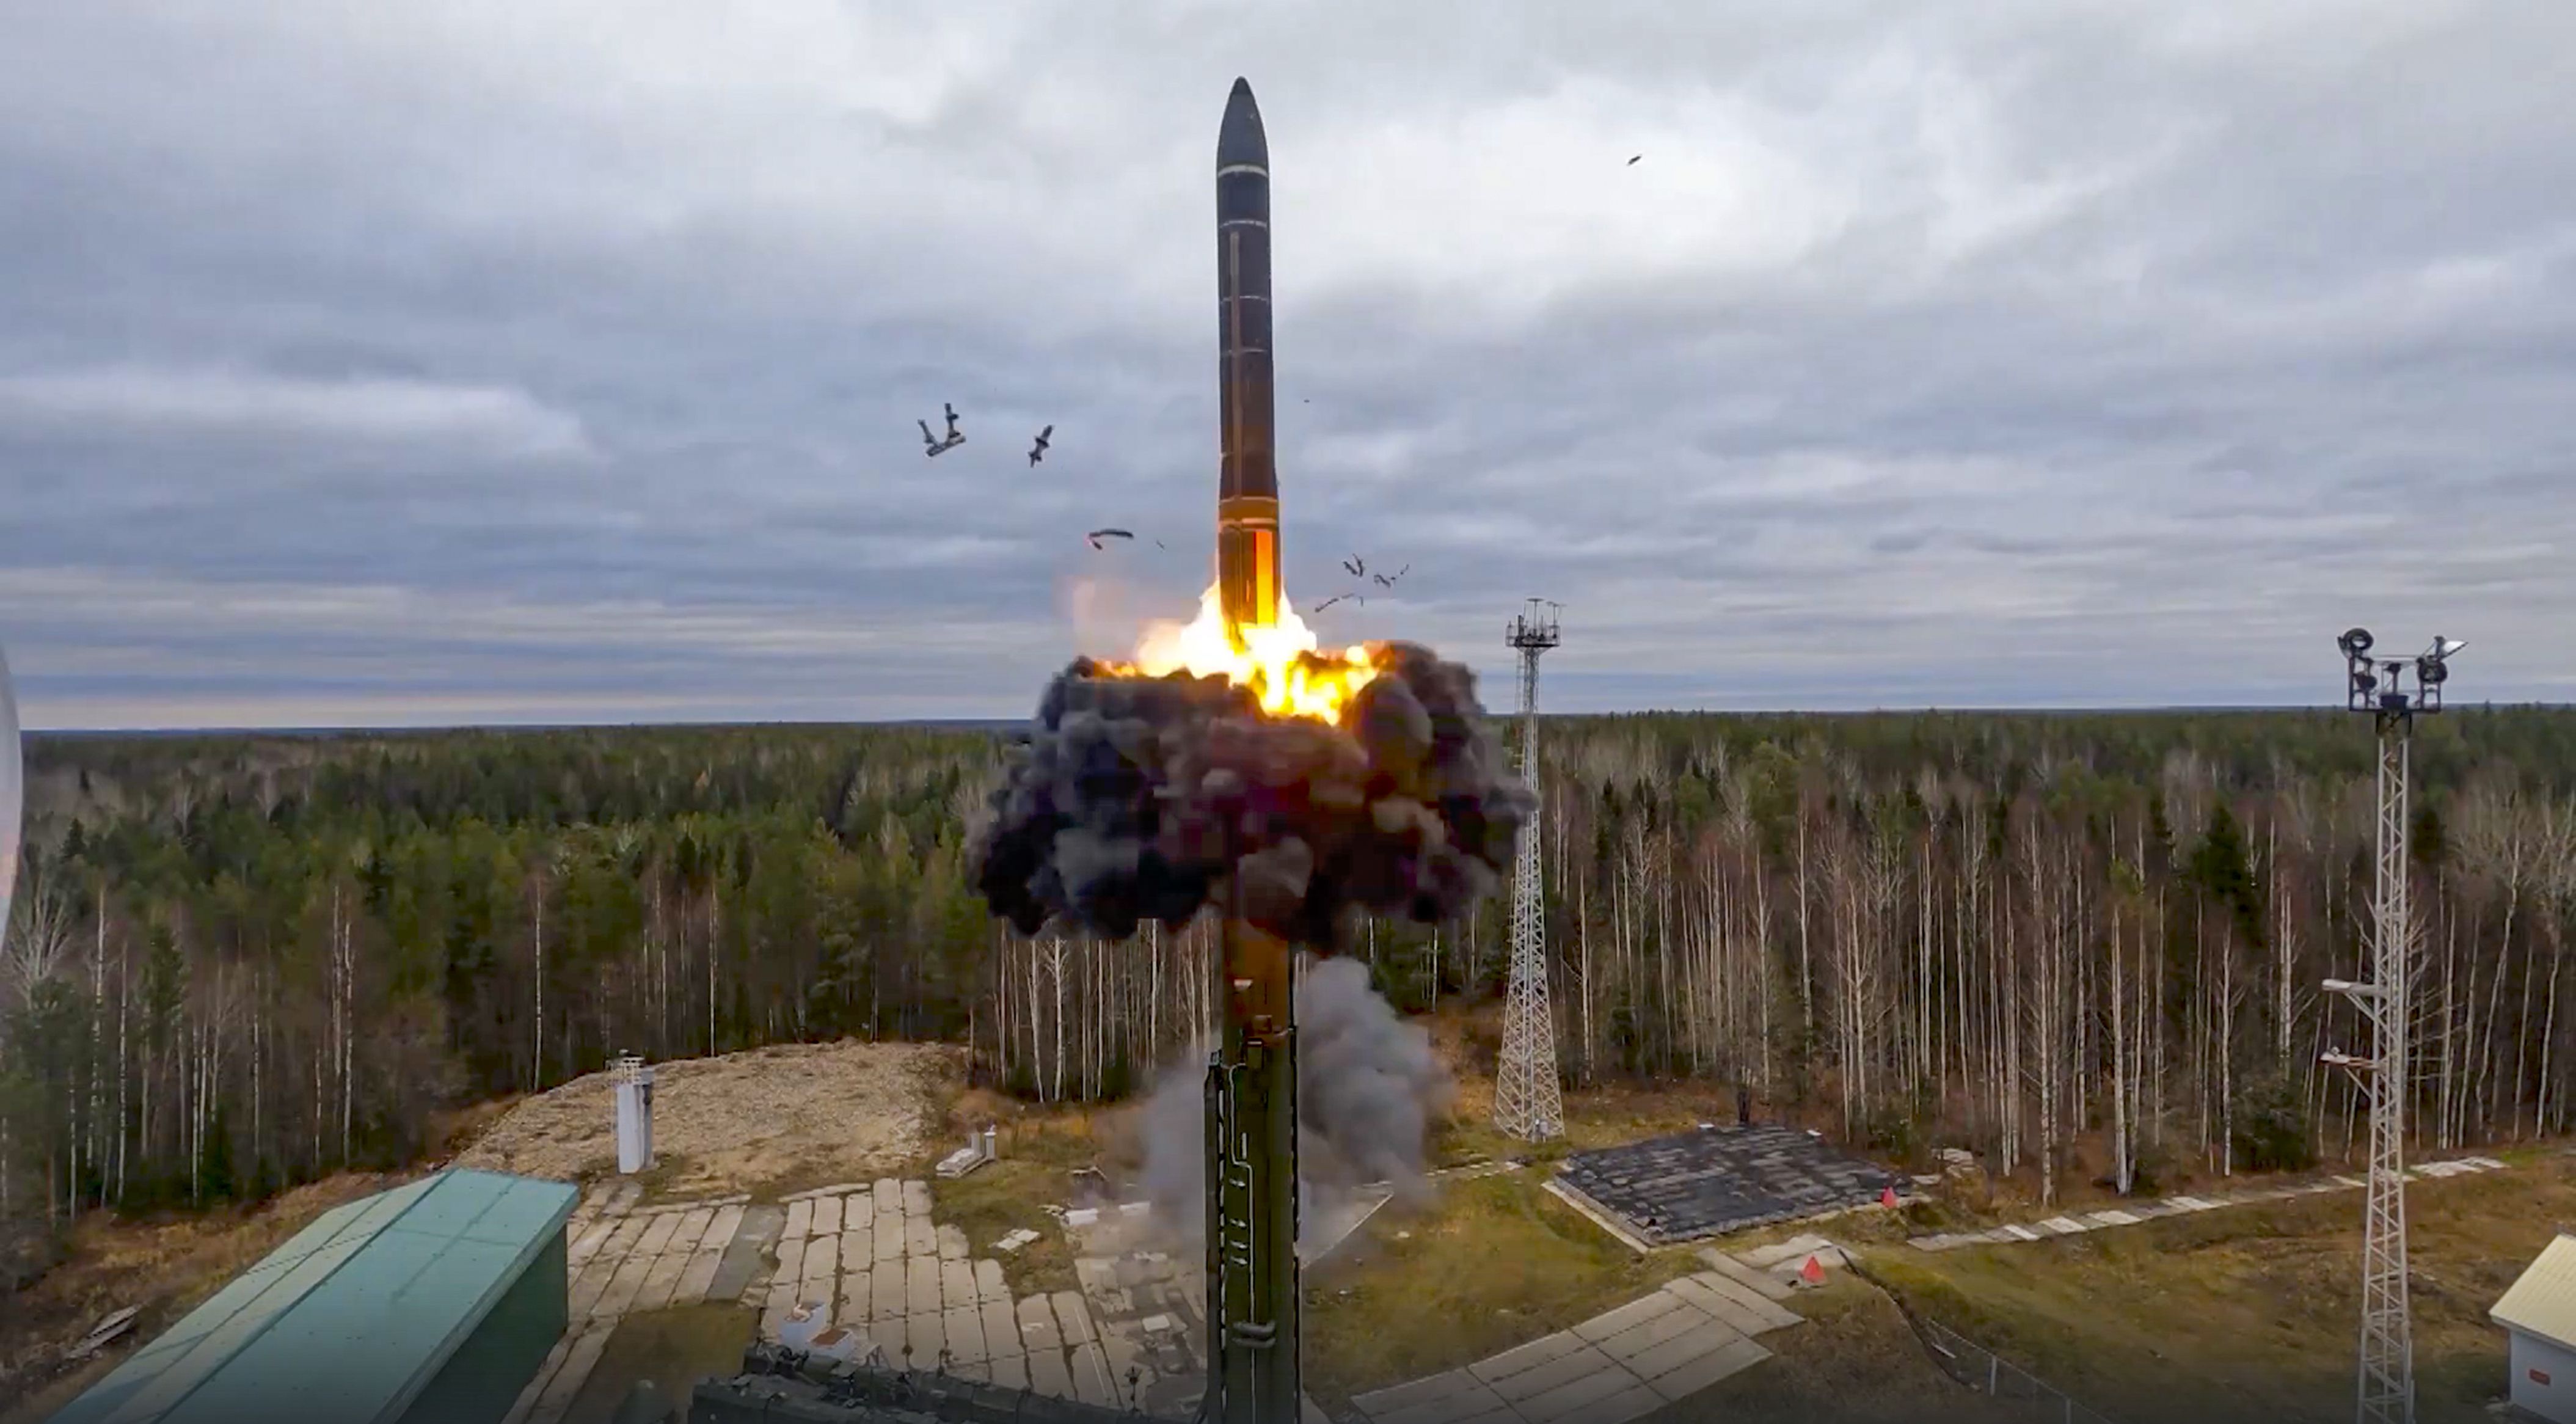 Un misil nuclear es lanzado como parte de una prueba en Plesetsk, en el noroeste de Rusia. Foto tomada de video proveido por el Servicio de Prensa del Ministerio de Defensa de Rusia el 26 de octubre de 2022 (Servicio de Prensa del Ministerio de Defensa de Rusia via AP)